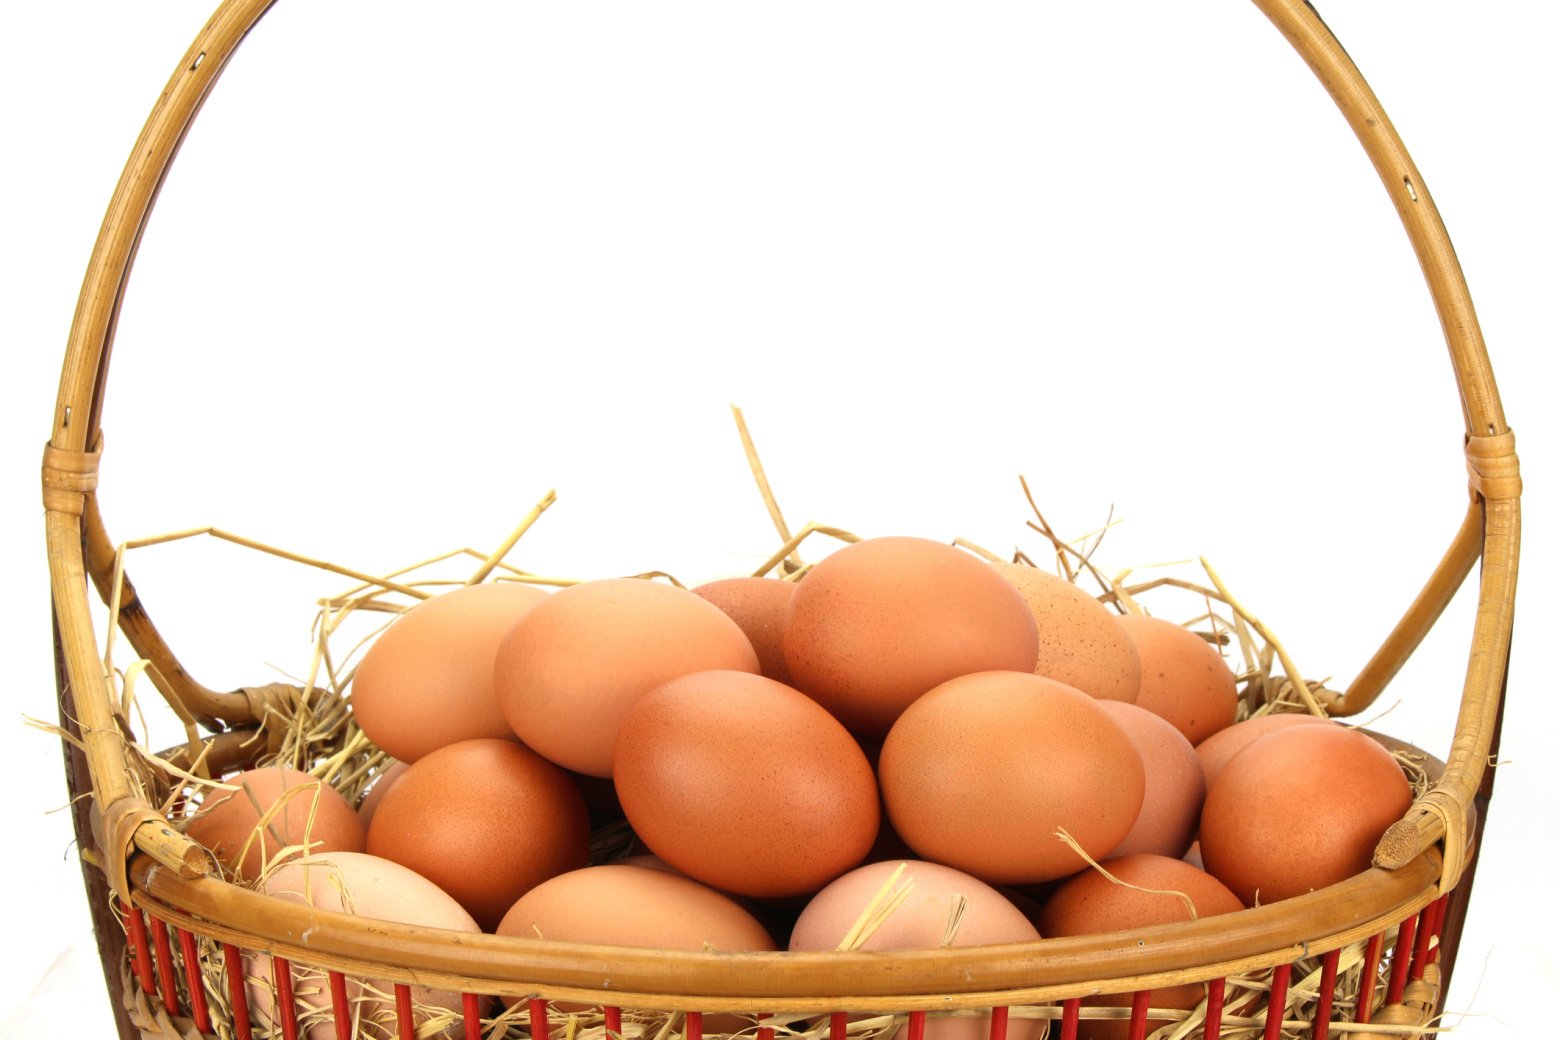 Brown eggs nestled in a wicker basket